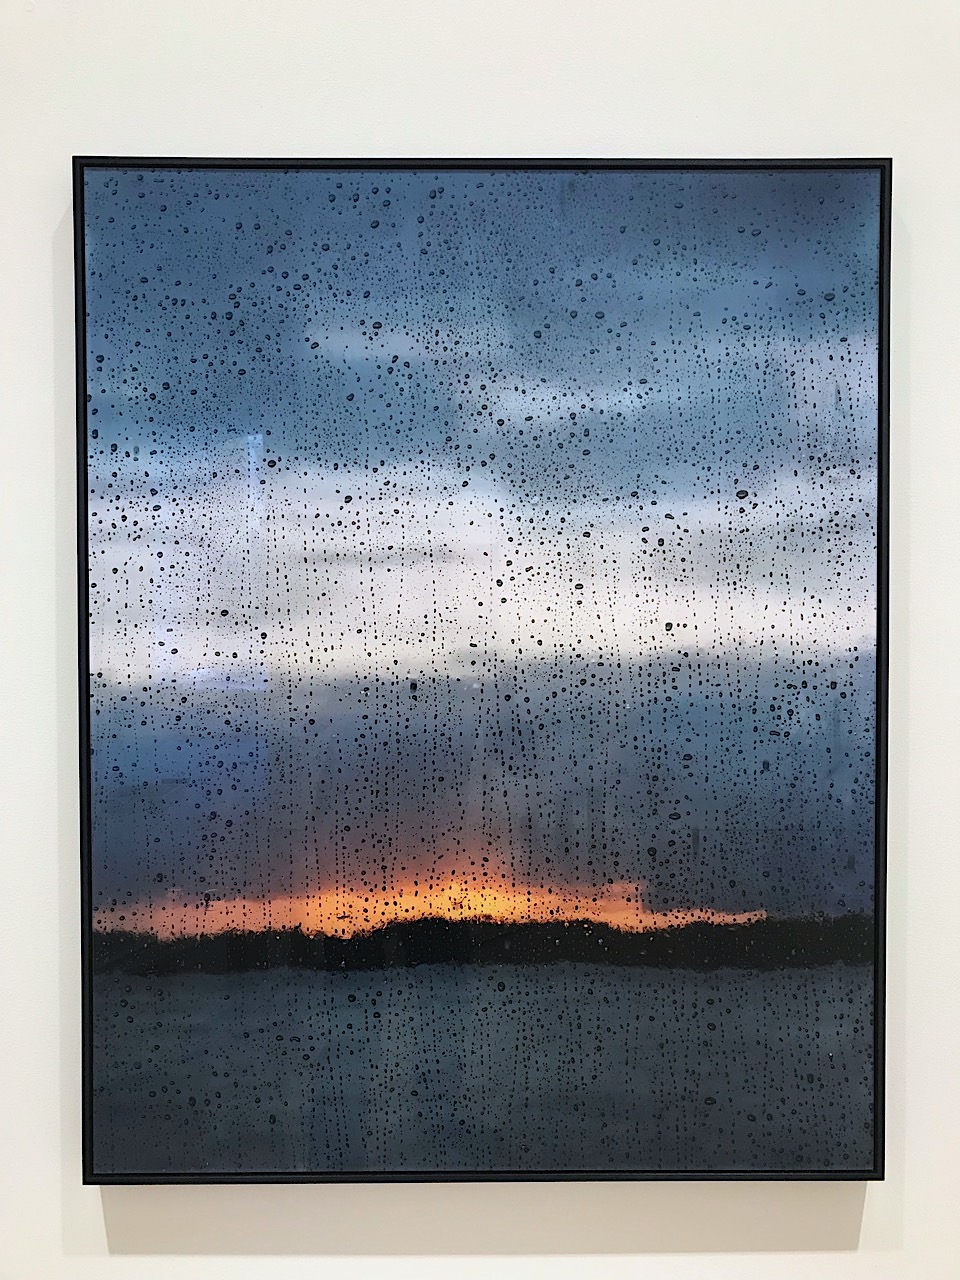 Jorma Puranen, "Seascapes after rain I", 2021. Pigment print, diasec, wooden frame. 102x81 cm